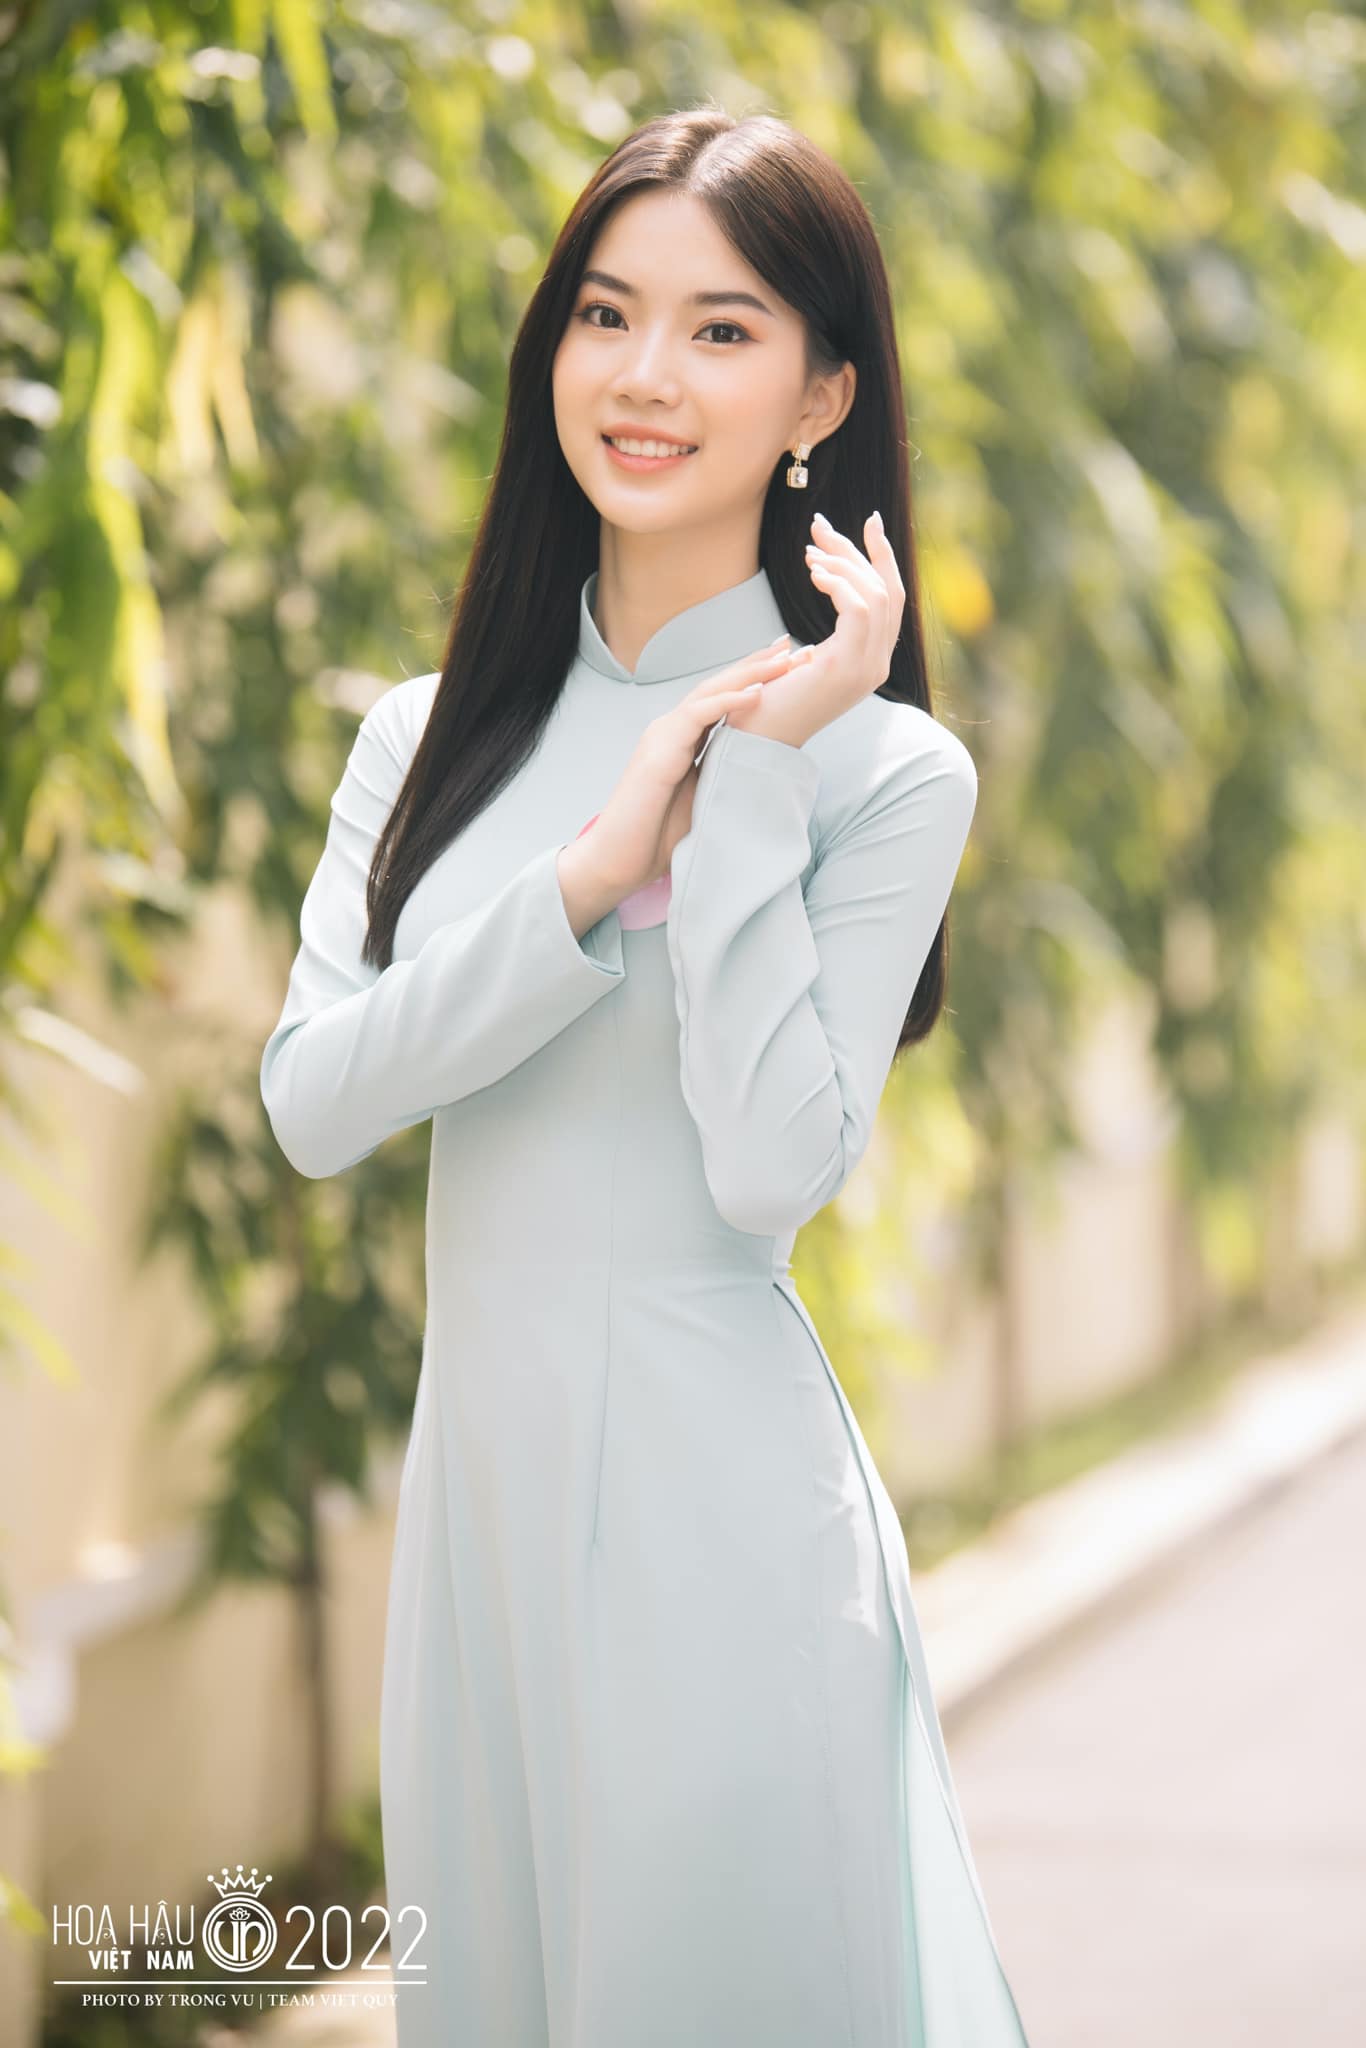 Điểm danh người đẹp sở hữu profile khủng tại Hoa hậu Việt Nam 2022 ...